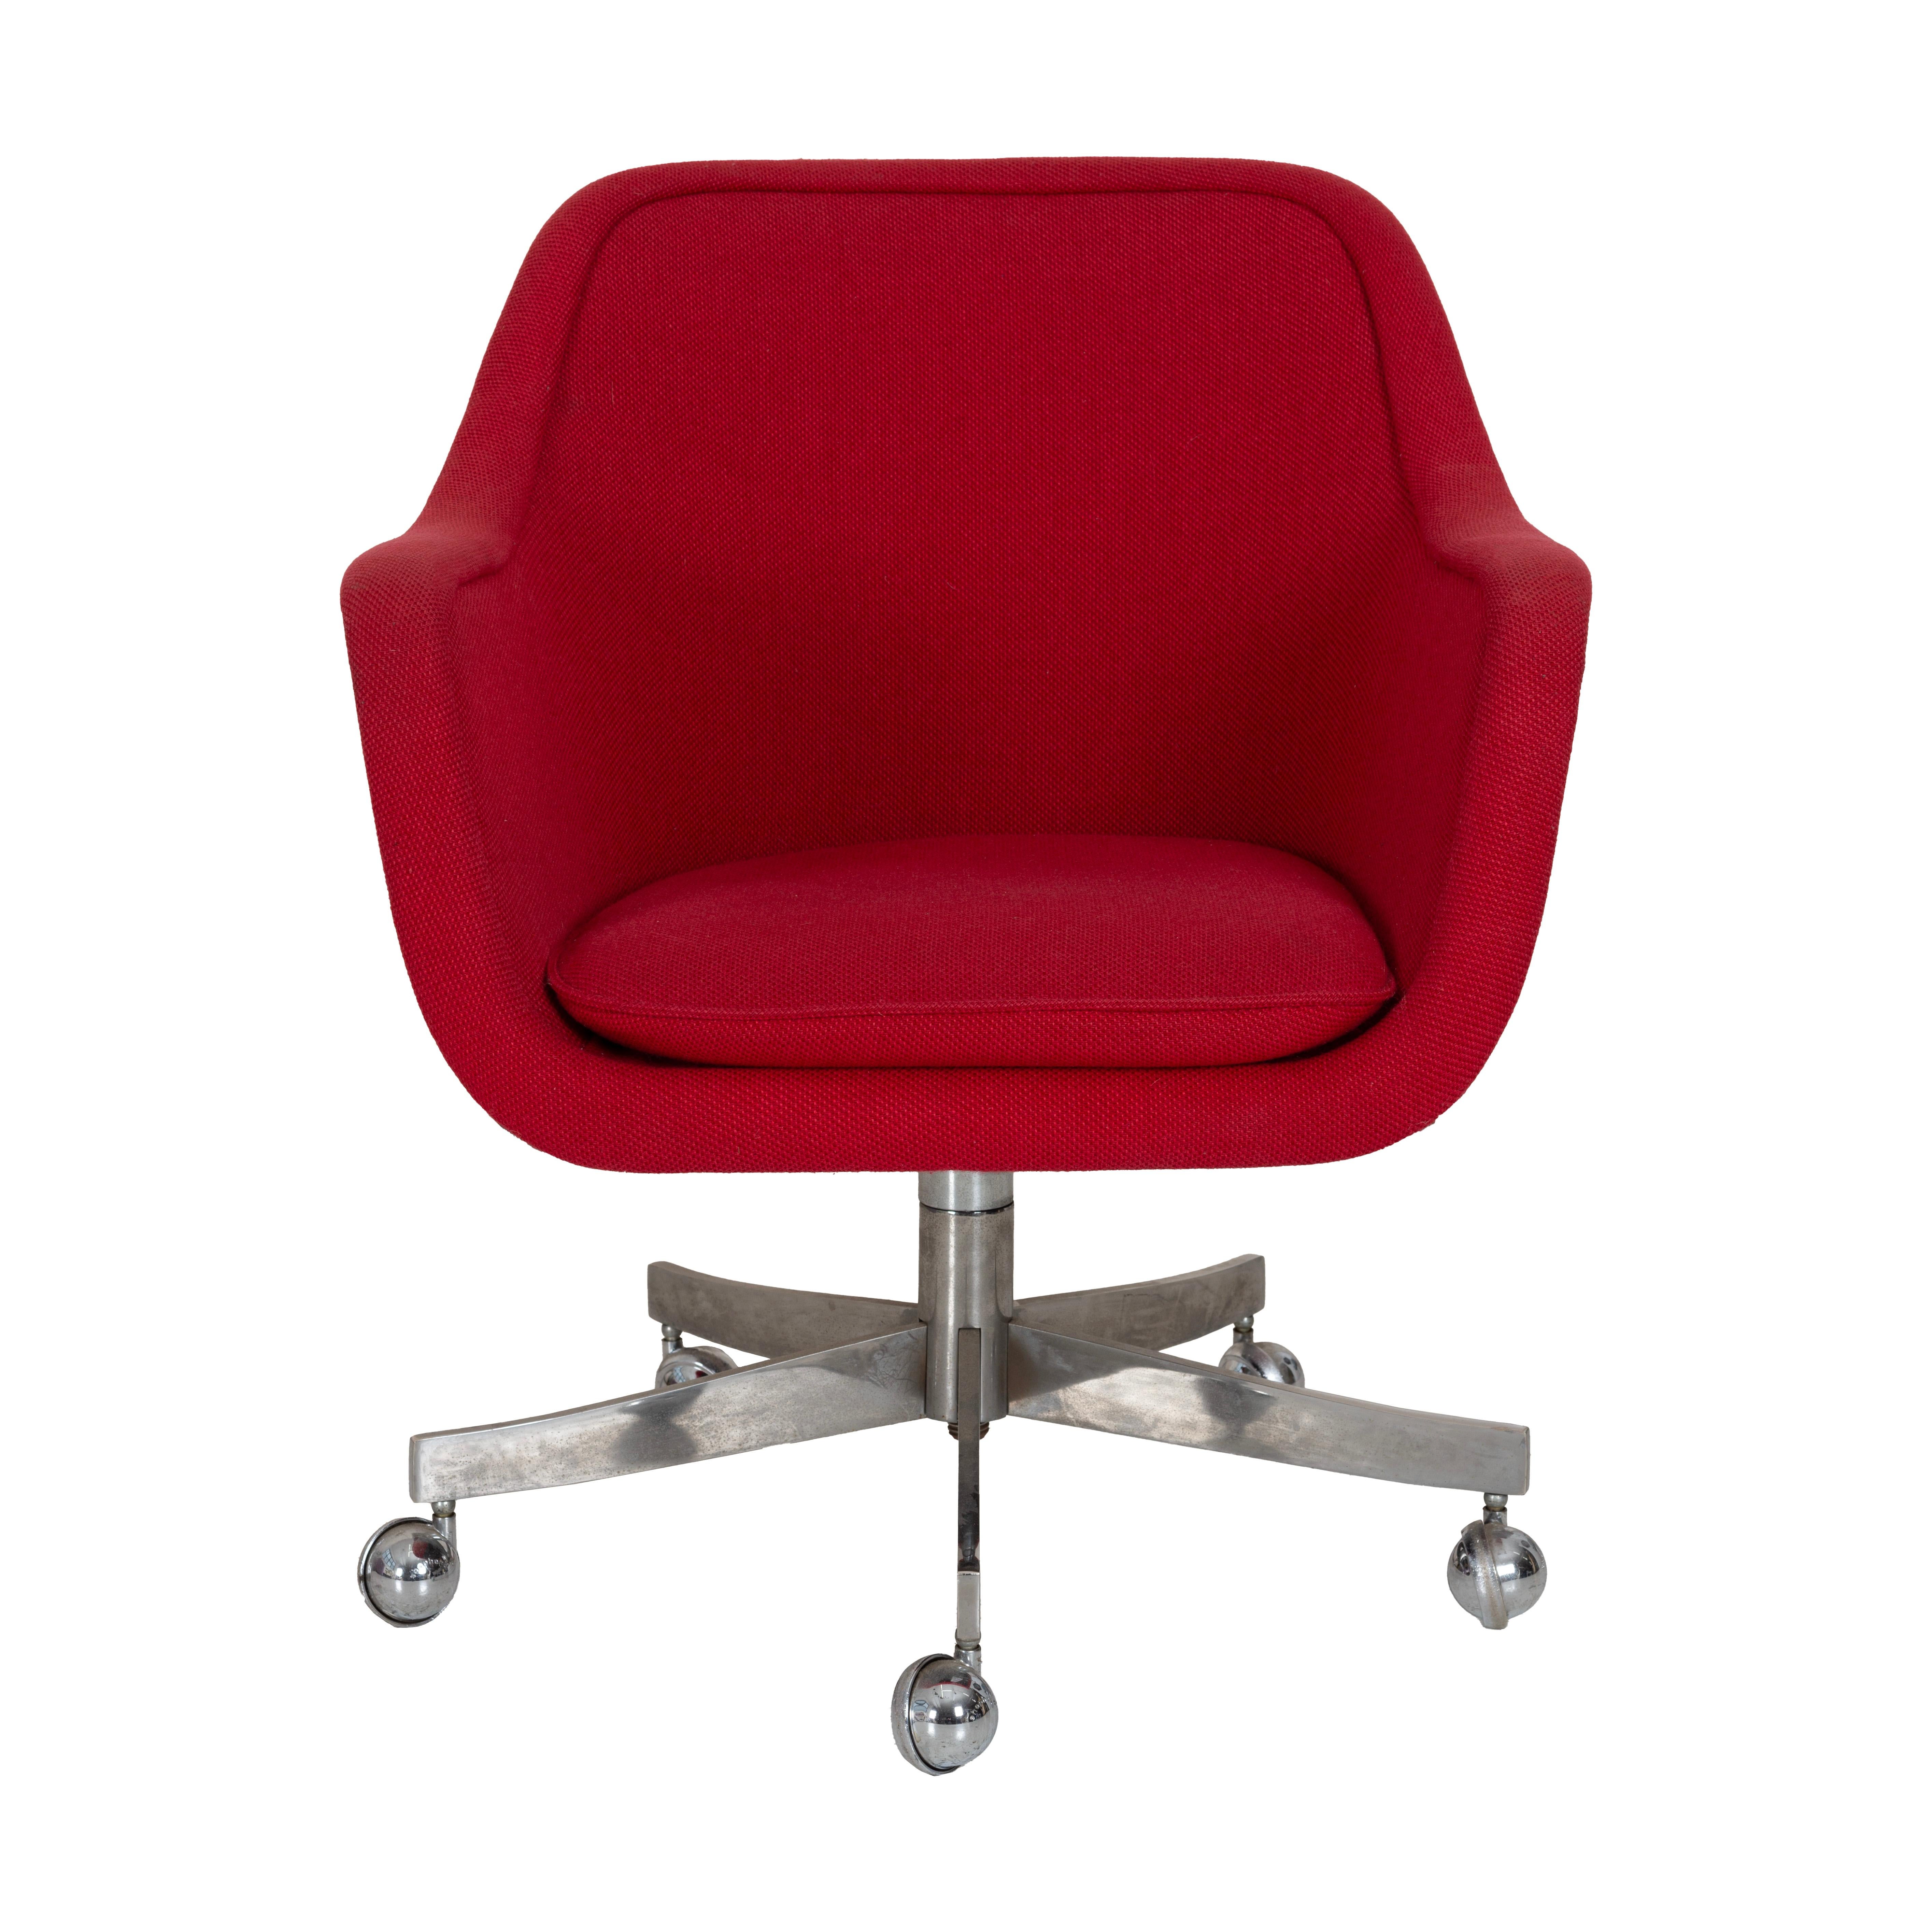 Ward Bennett Schreibtischstuhl.  Gepolstert mit rotem Original-Baumwoll-Gewebe. Der Stuhl ist kipp- und schwenkbar und in der Höhe verstellbar.  Die folgenden Abmessungen gelten für die niedrigste Position. Sie kann bei Bedarf bis zu 3